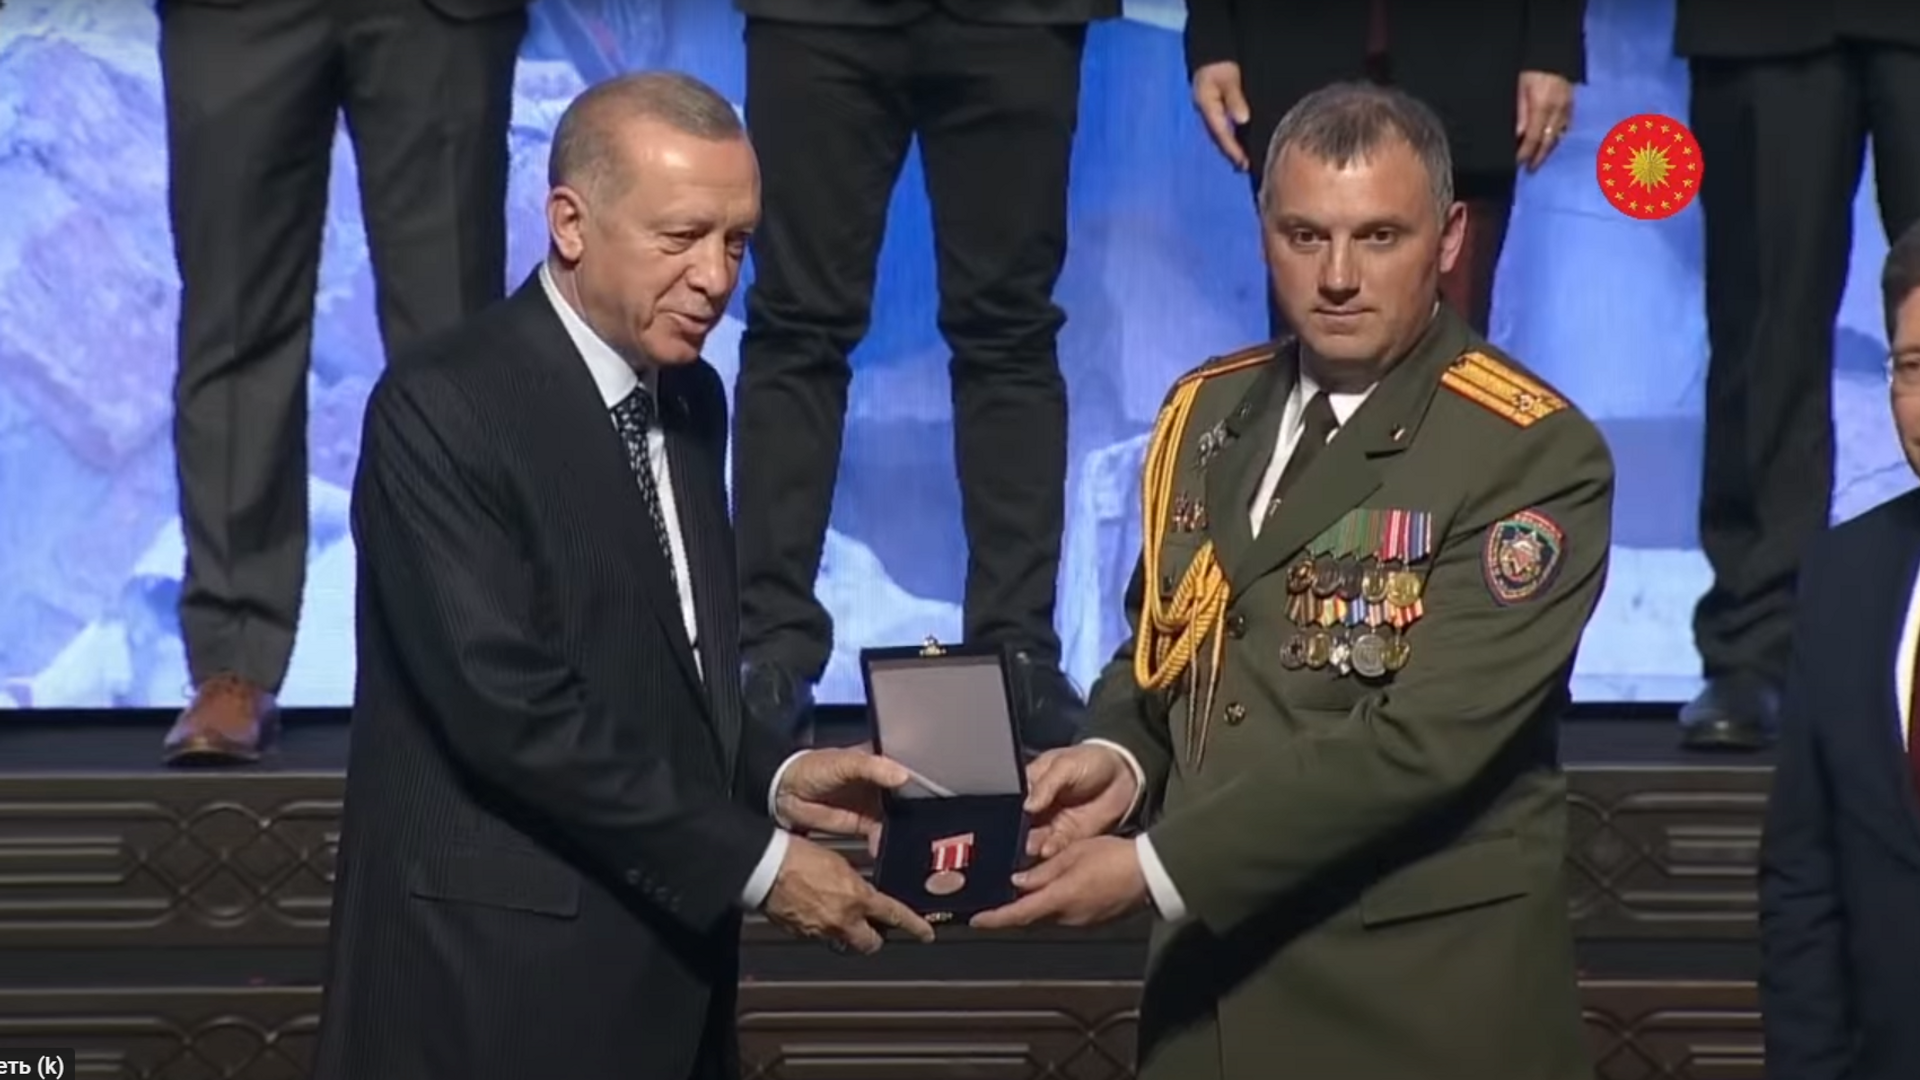 Эрдоган наградил белорусских спасателей за помощь после землетрясения в Турции - Sputnik Беларусь, 1920, 25.04.2023